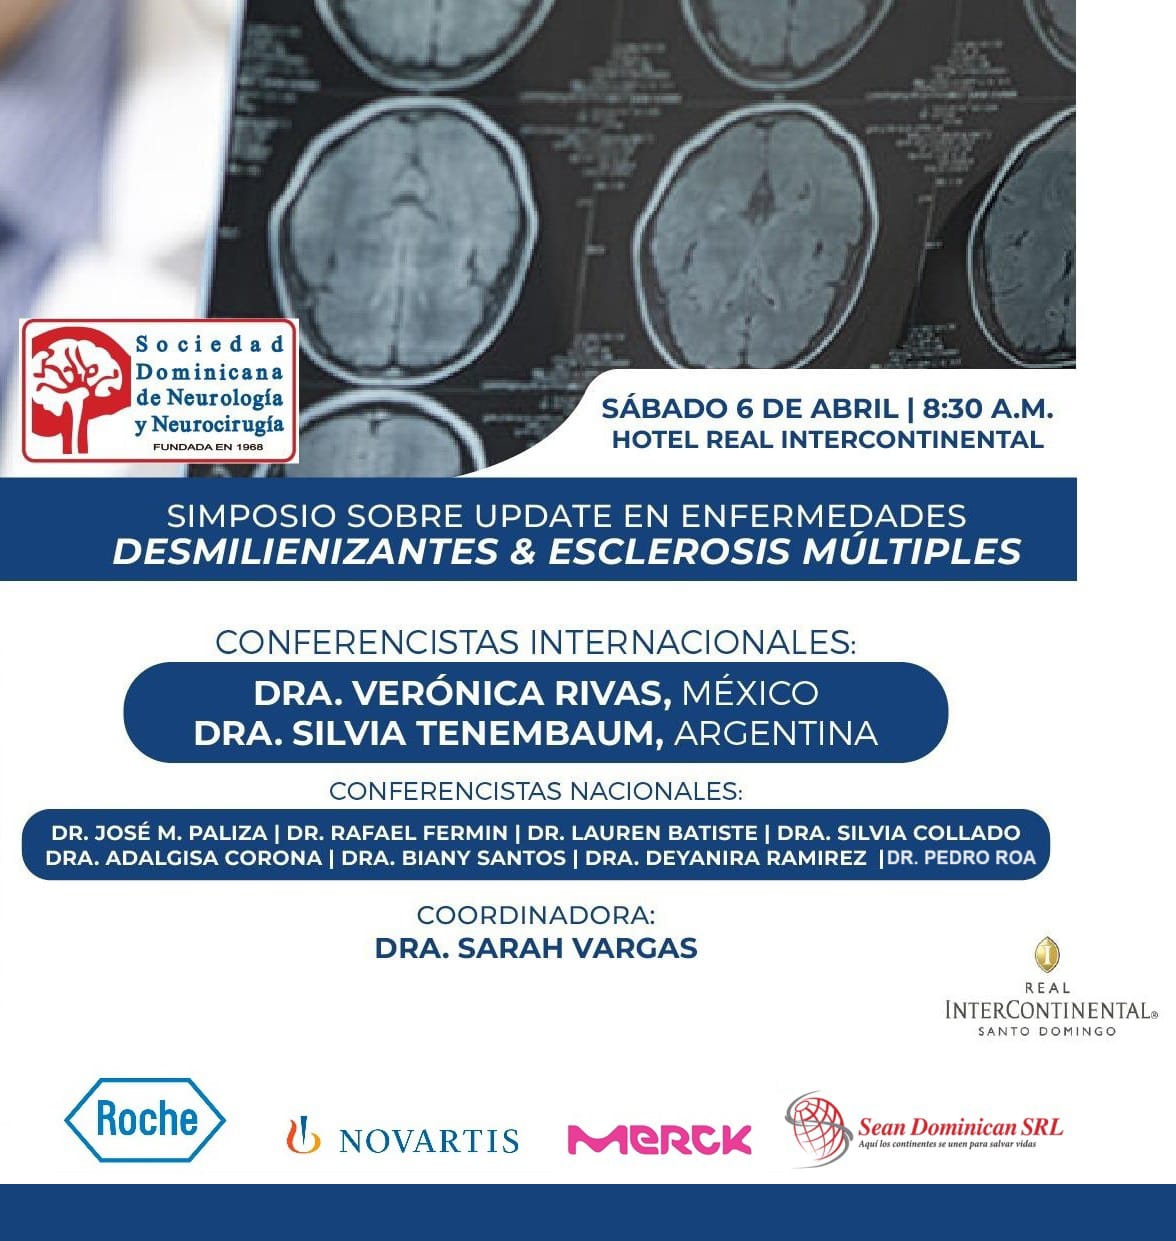 Sociedad Dominicana de Neurología